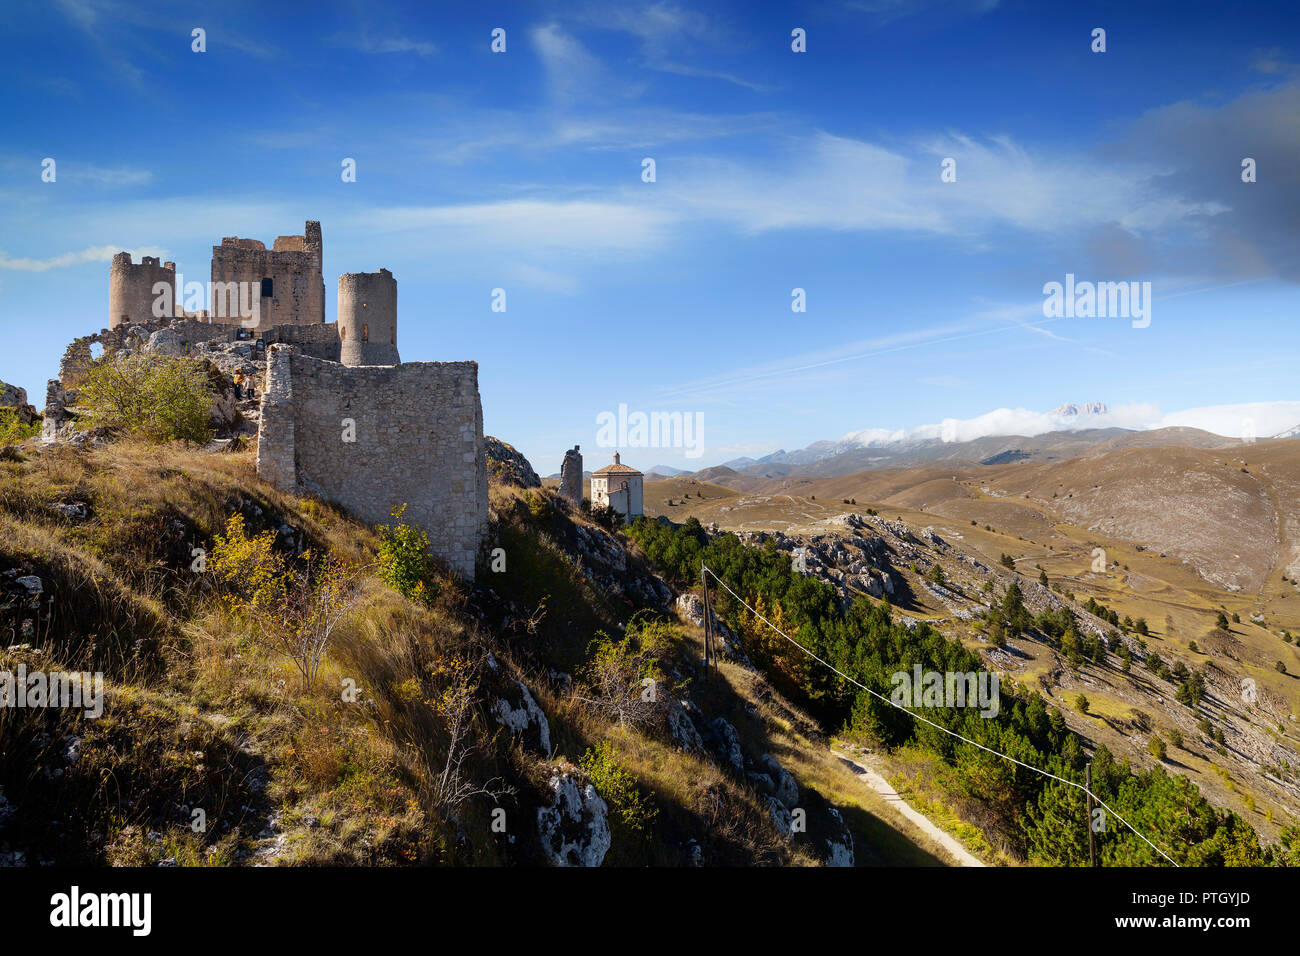 The 10th Century Rocca Calascio, a mountaintop fortress near the hilltown of Santo Stefano di Sessanio in the Province of L'Aquila in Abruzzo, Italy.  Stock Photo